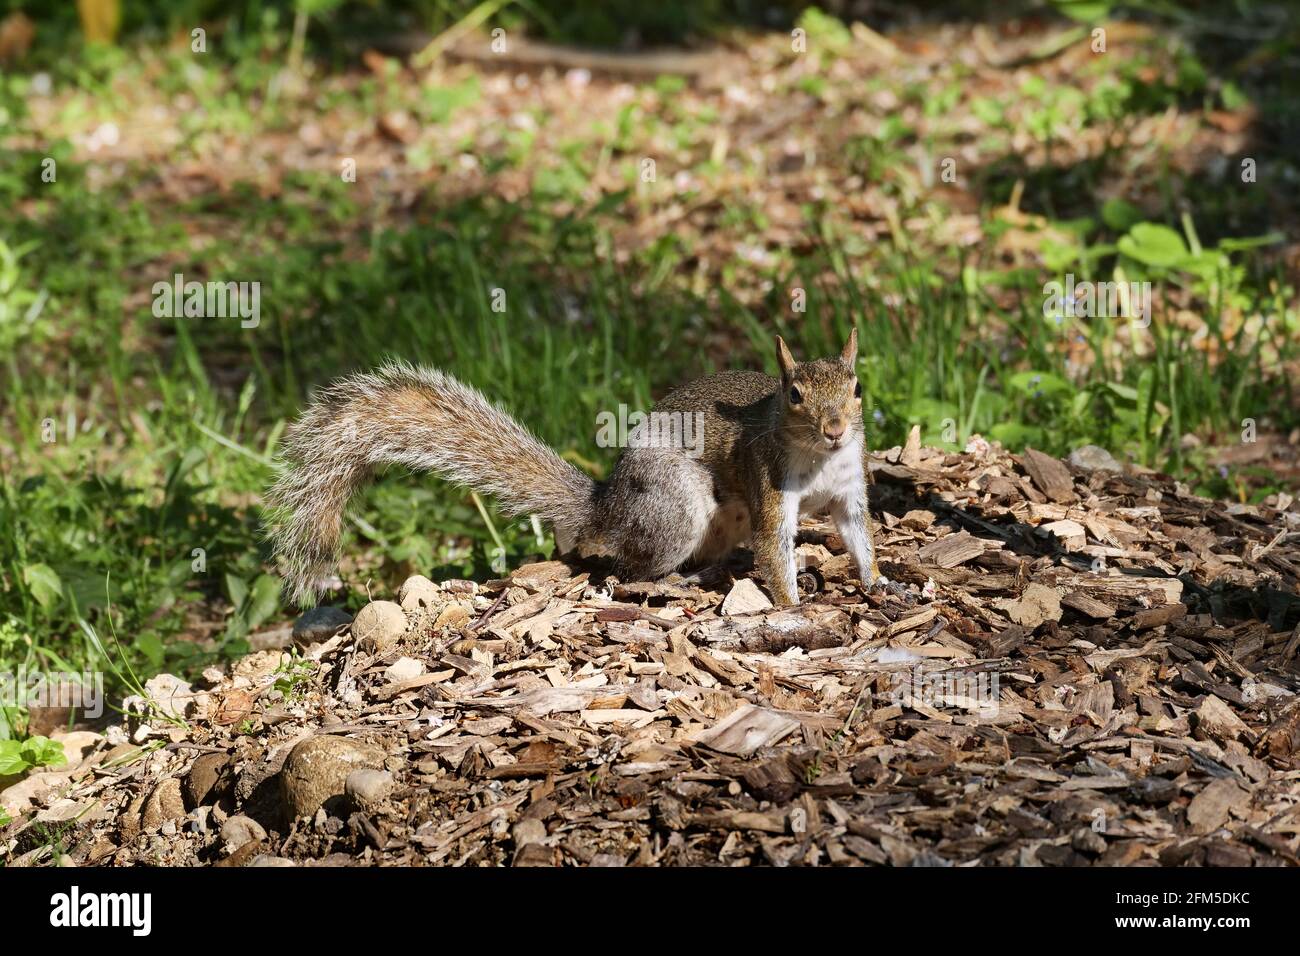 Squirrel posing in Villa Real pubblic park, Monza, Italy Stock Photo